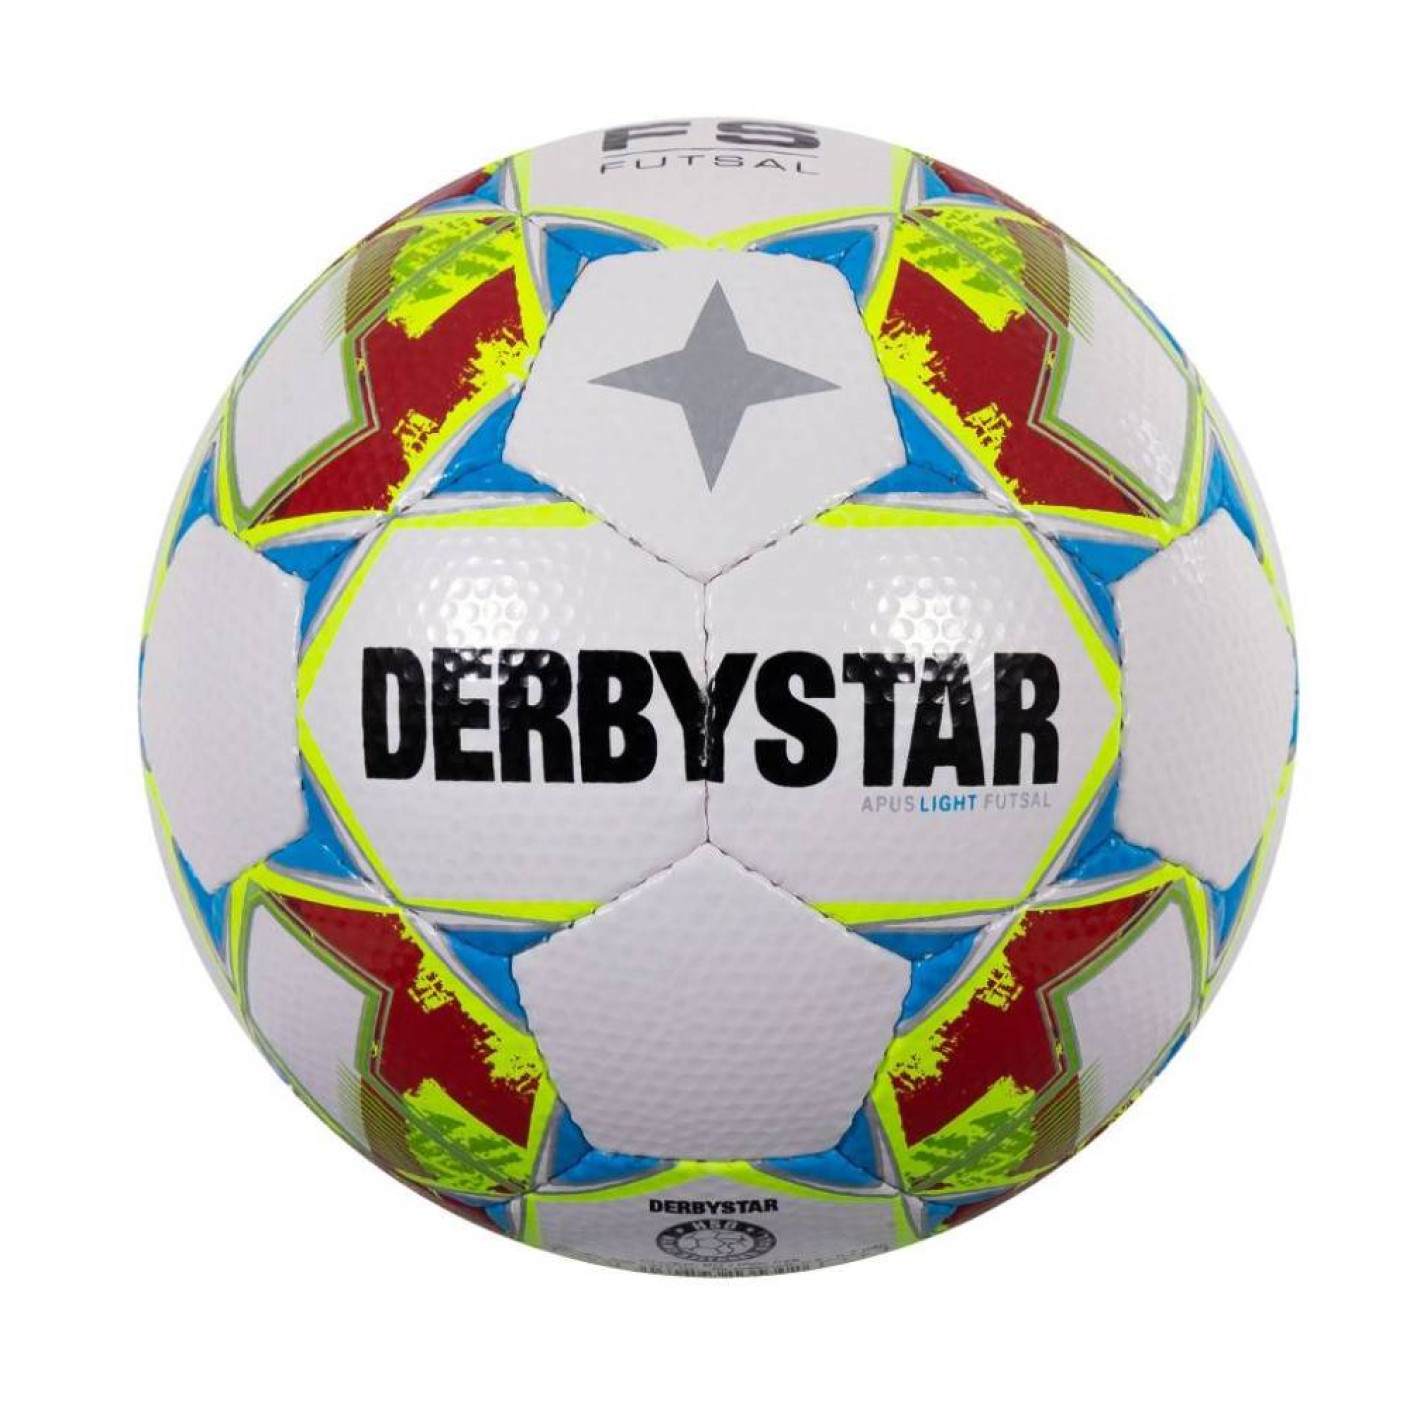 Derbystar Apus Light Futsal Voetbal